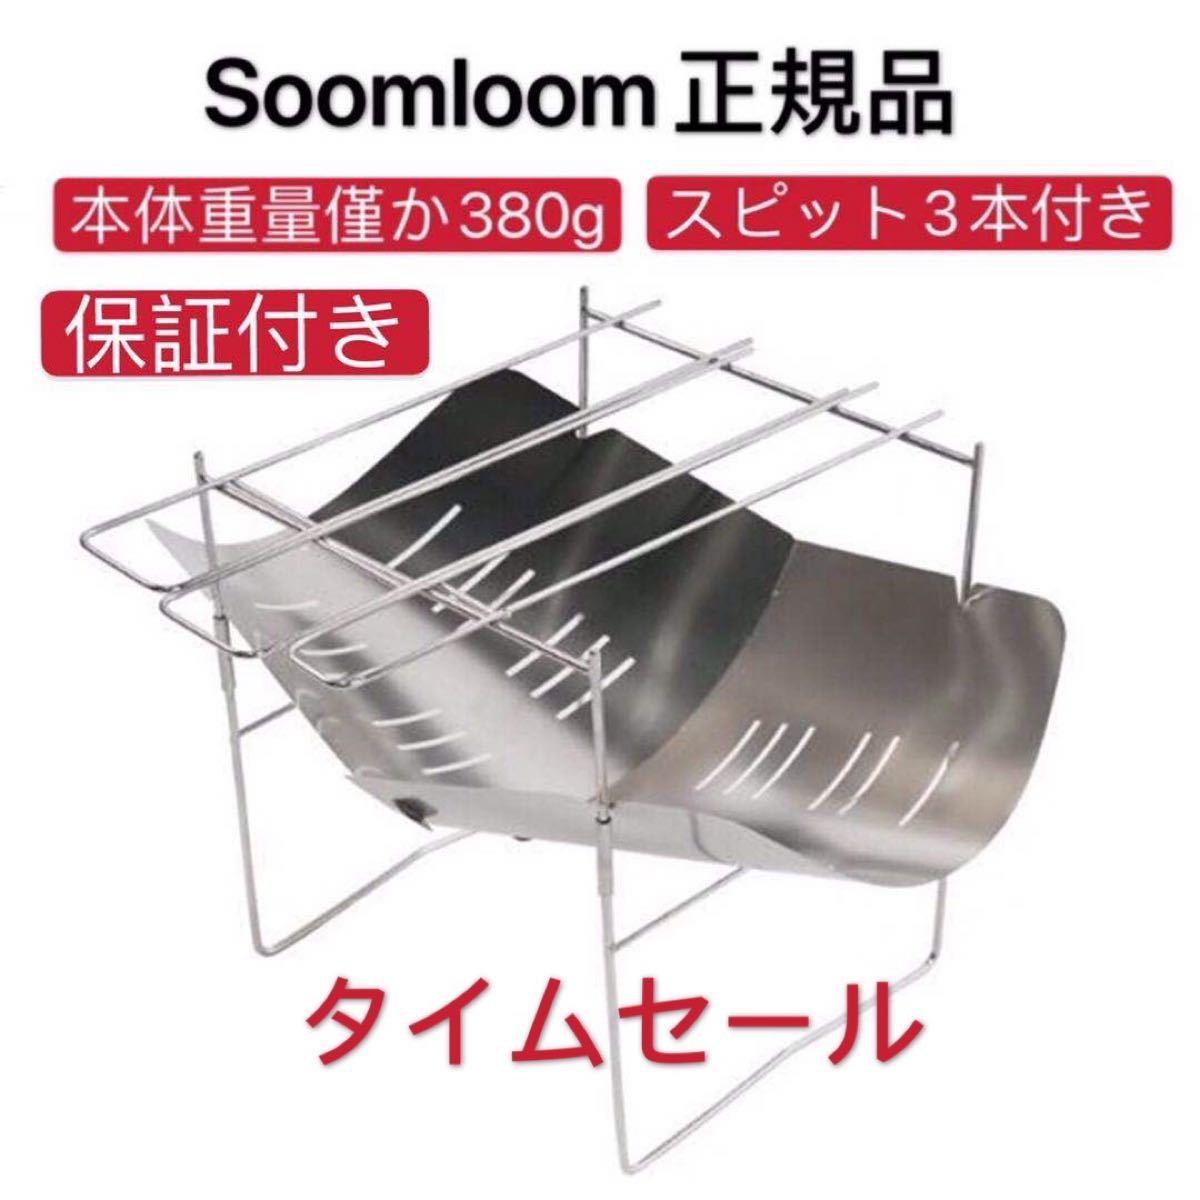 Soomloom正規品 焚き火台　1年保証付　折り畳み式 